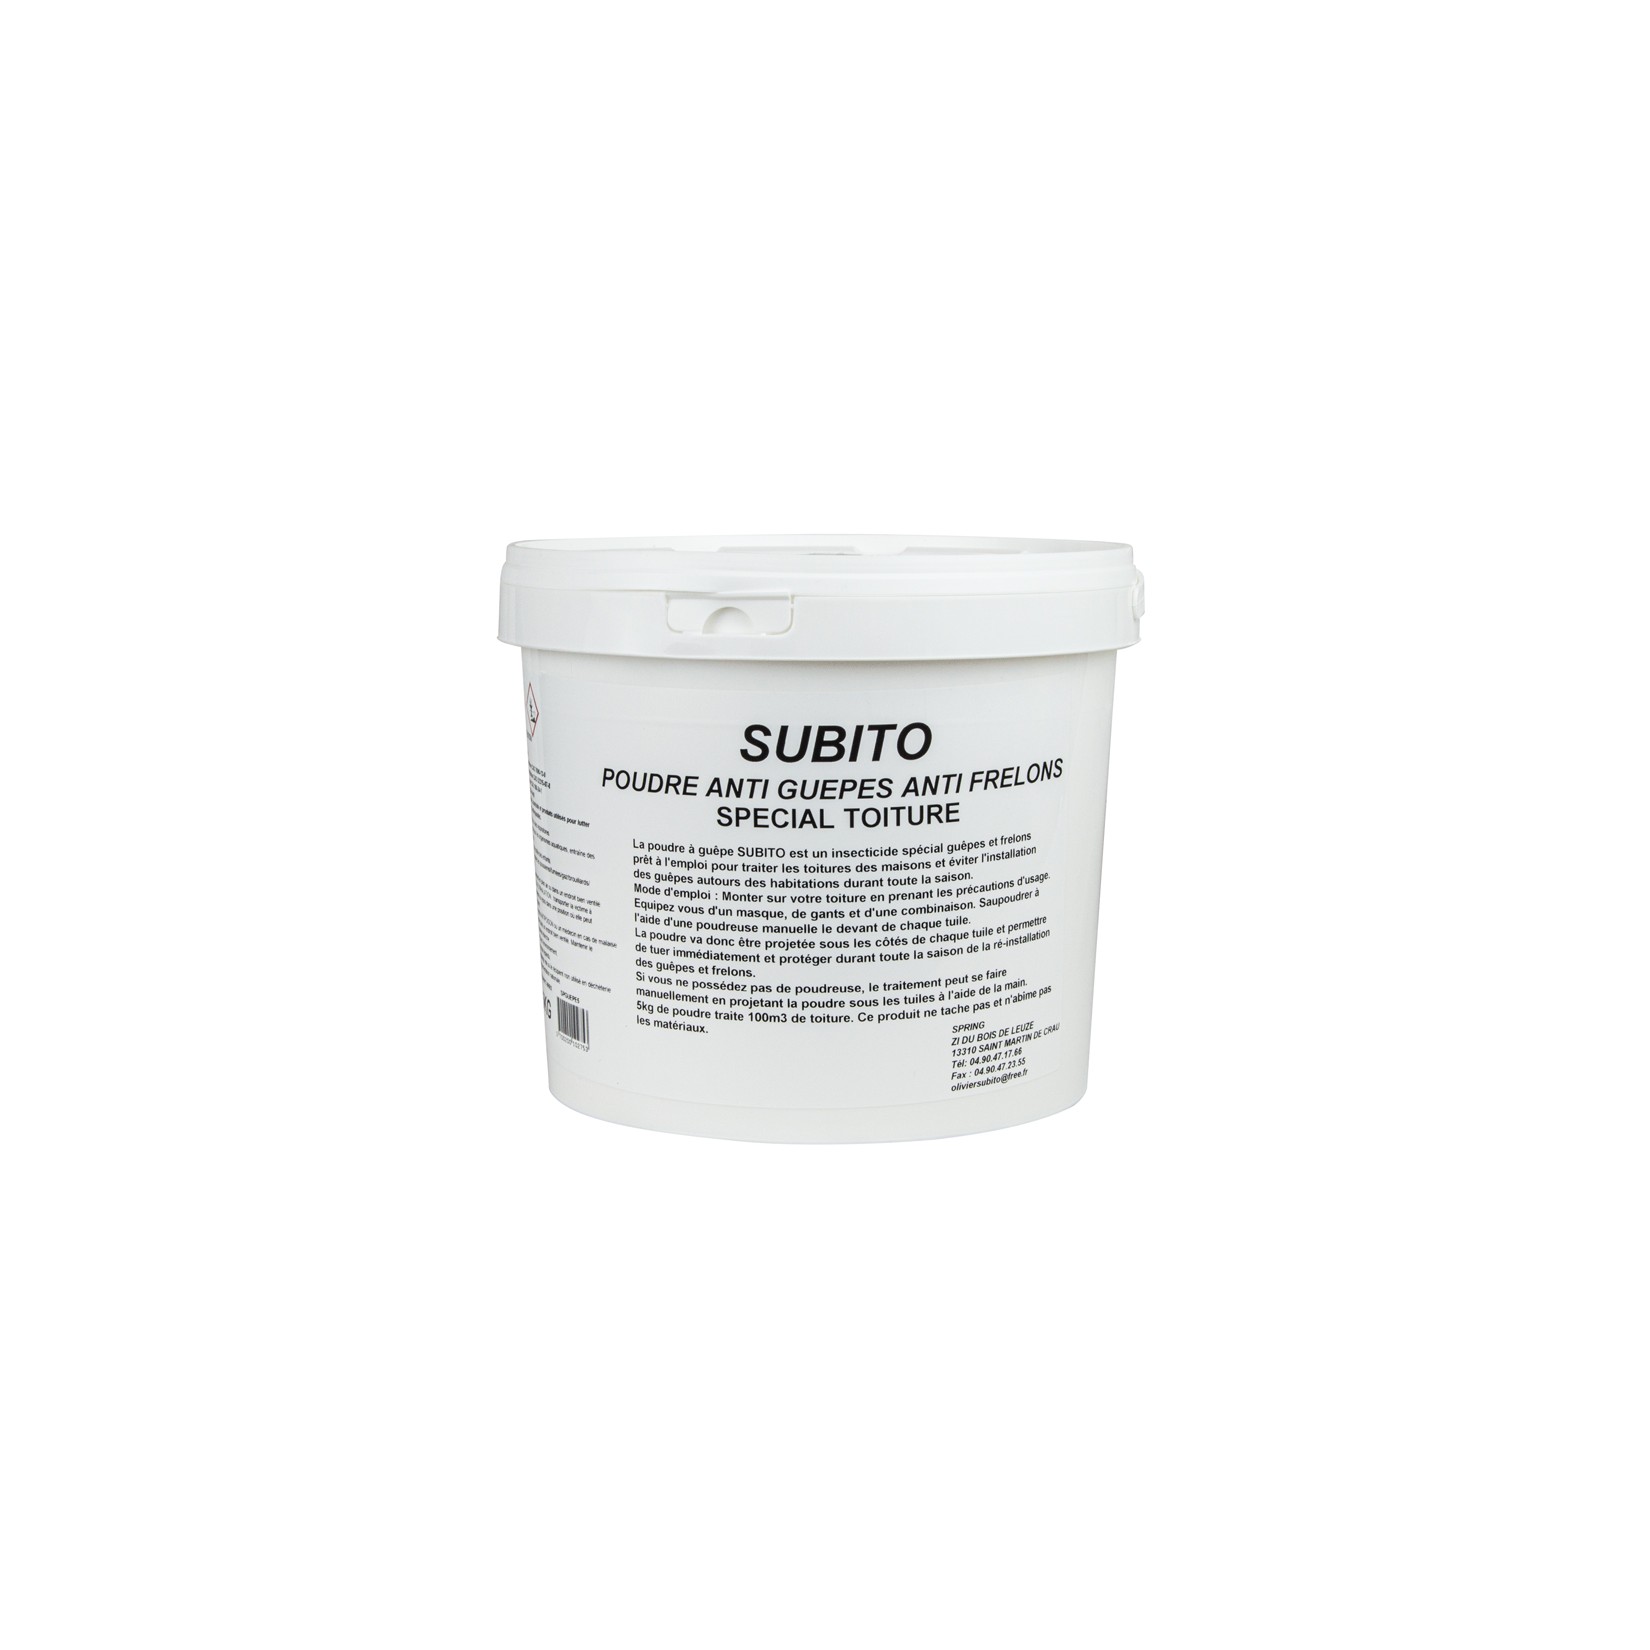 Poudre anti-guêpes et frelons spécial toitures seau de 5 kg Subito | Insecticide Antinuisible Qualité Professionnelle